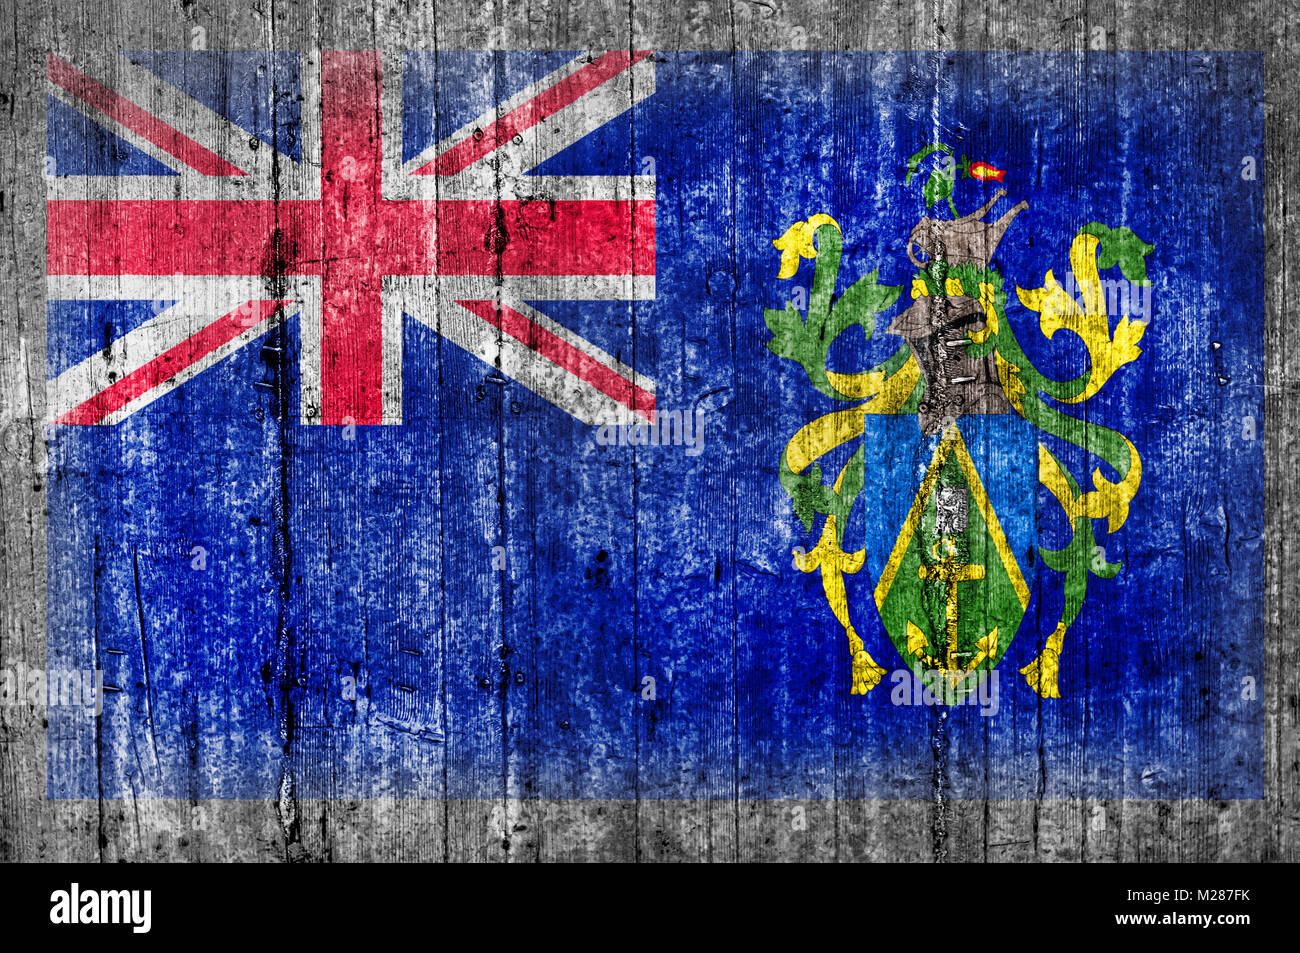 Pitcairninseln Flagge bemalt auf Hintergrund Textur grauer Beton Stockfoto